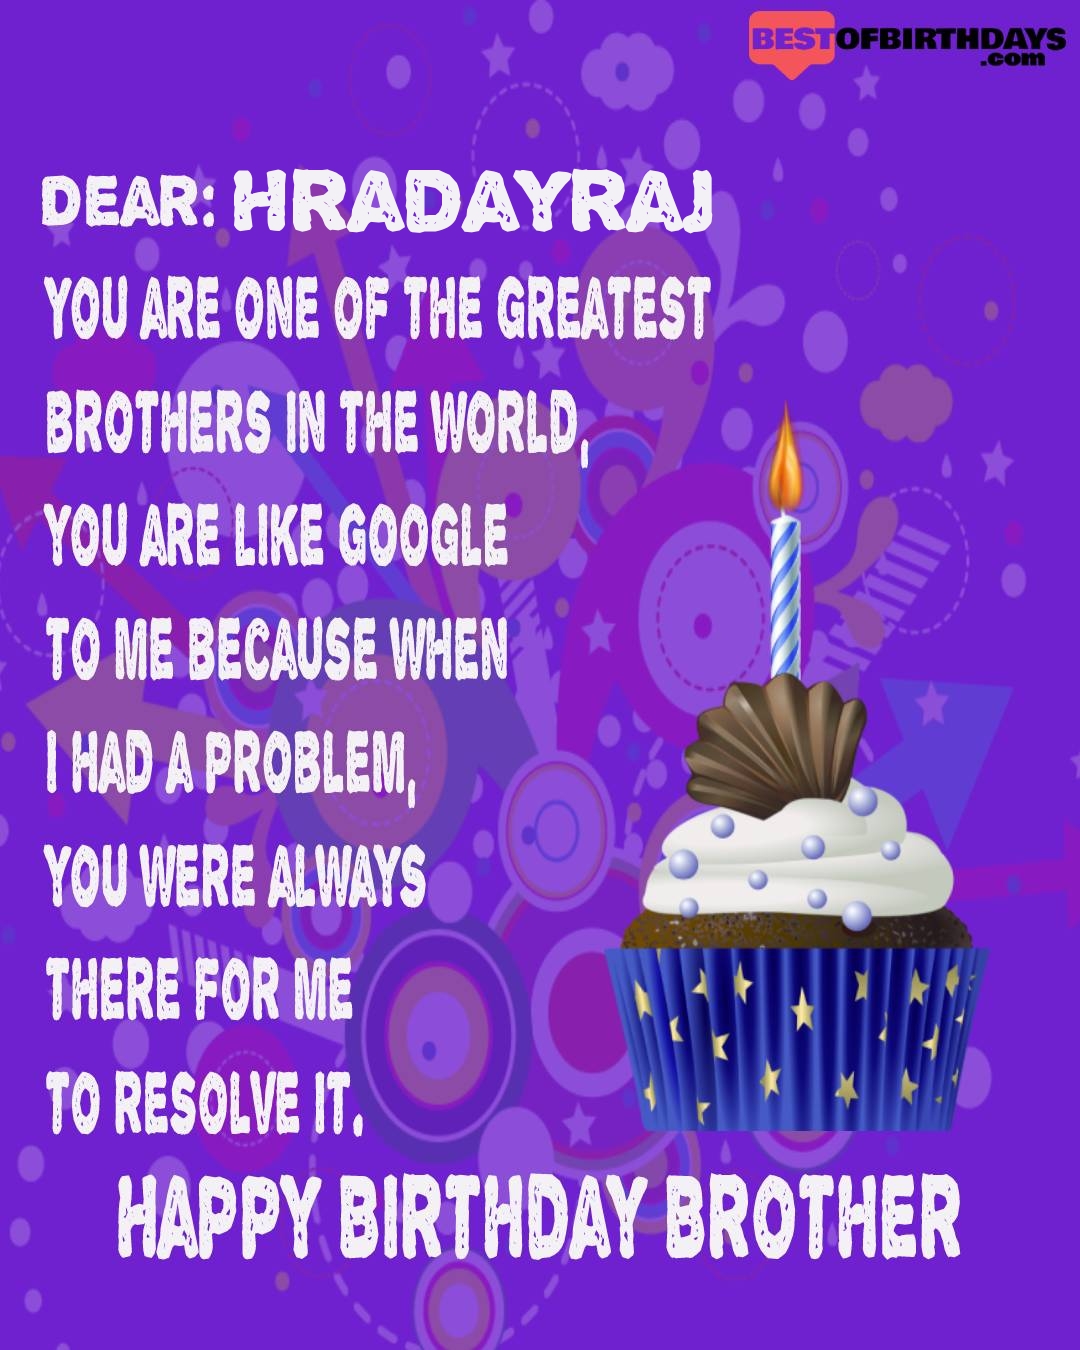 Happy birthday hradayraj bhai brother bro